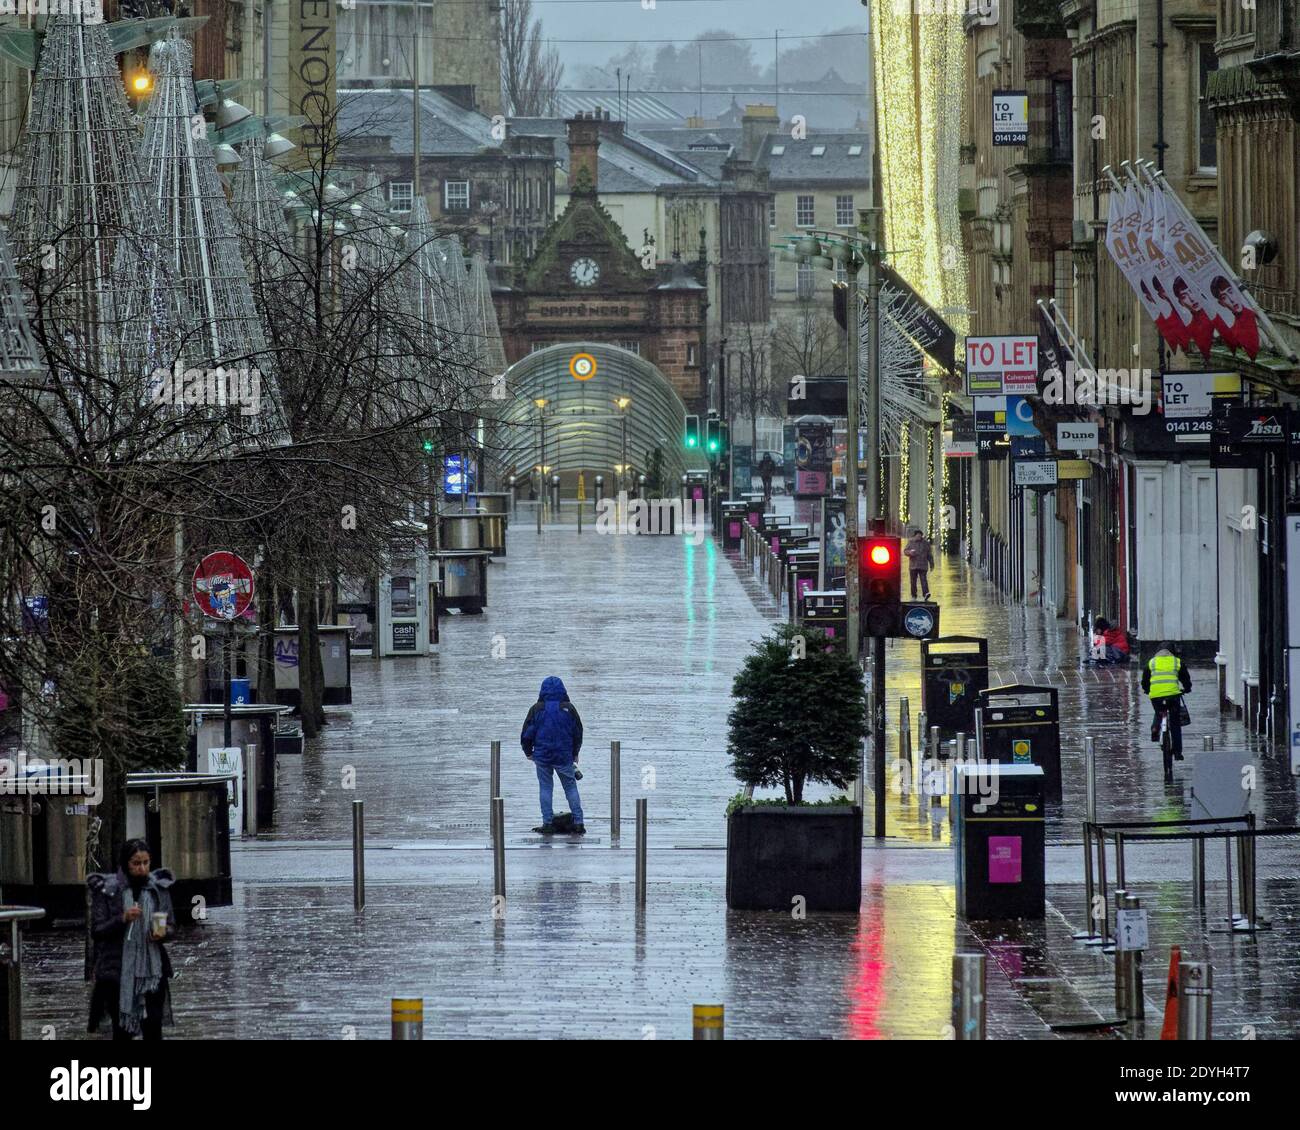 Glasgow, Scozia, Regno Unito. 26 Dicembre 2020. Regno Unito Meteo:Storm Bella ha fatto la doccia della città con vento e pioggia come ombrelli ha preso il brusio della tempesta con un desolato centro della città a causa di Tier 4 è davvero una misera vacanza di Natale.: Gerard Ferry / Alamy Live News Foto Stock